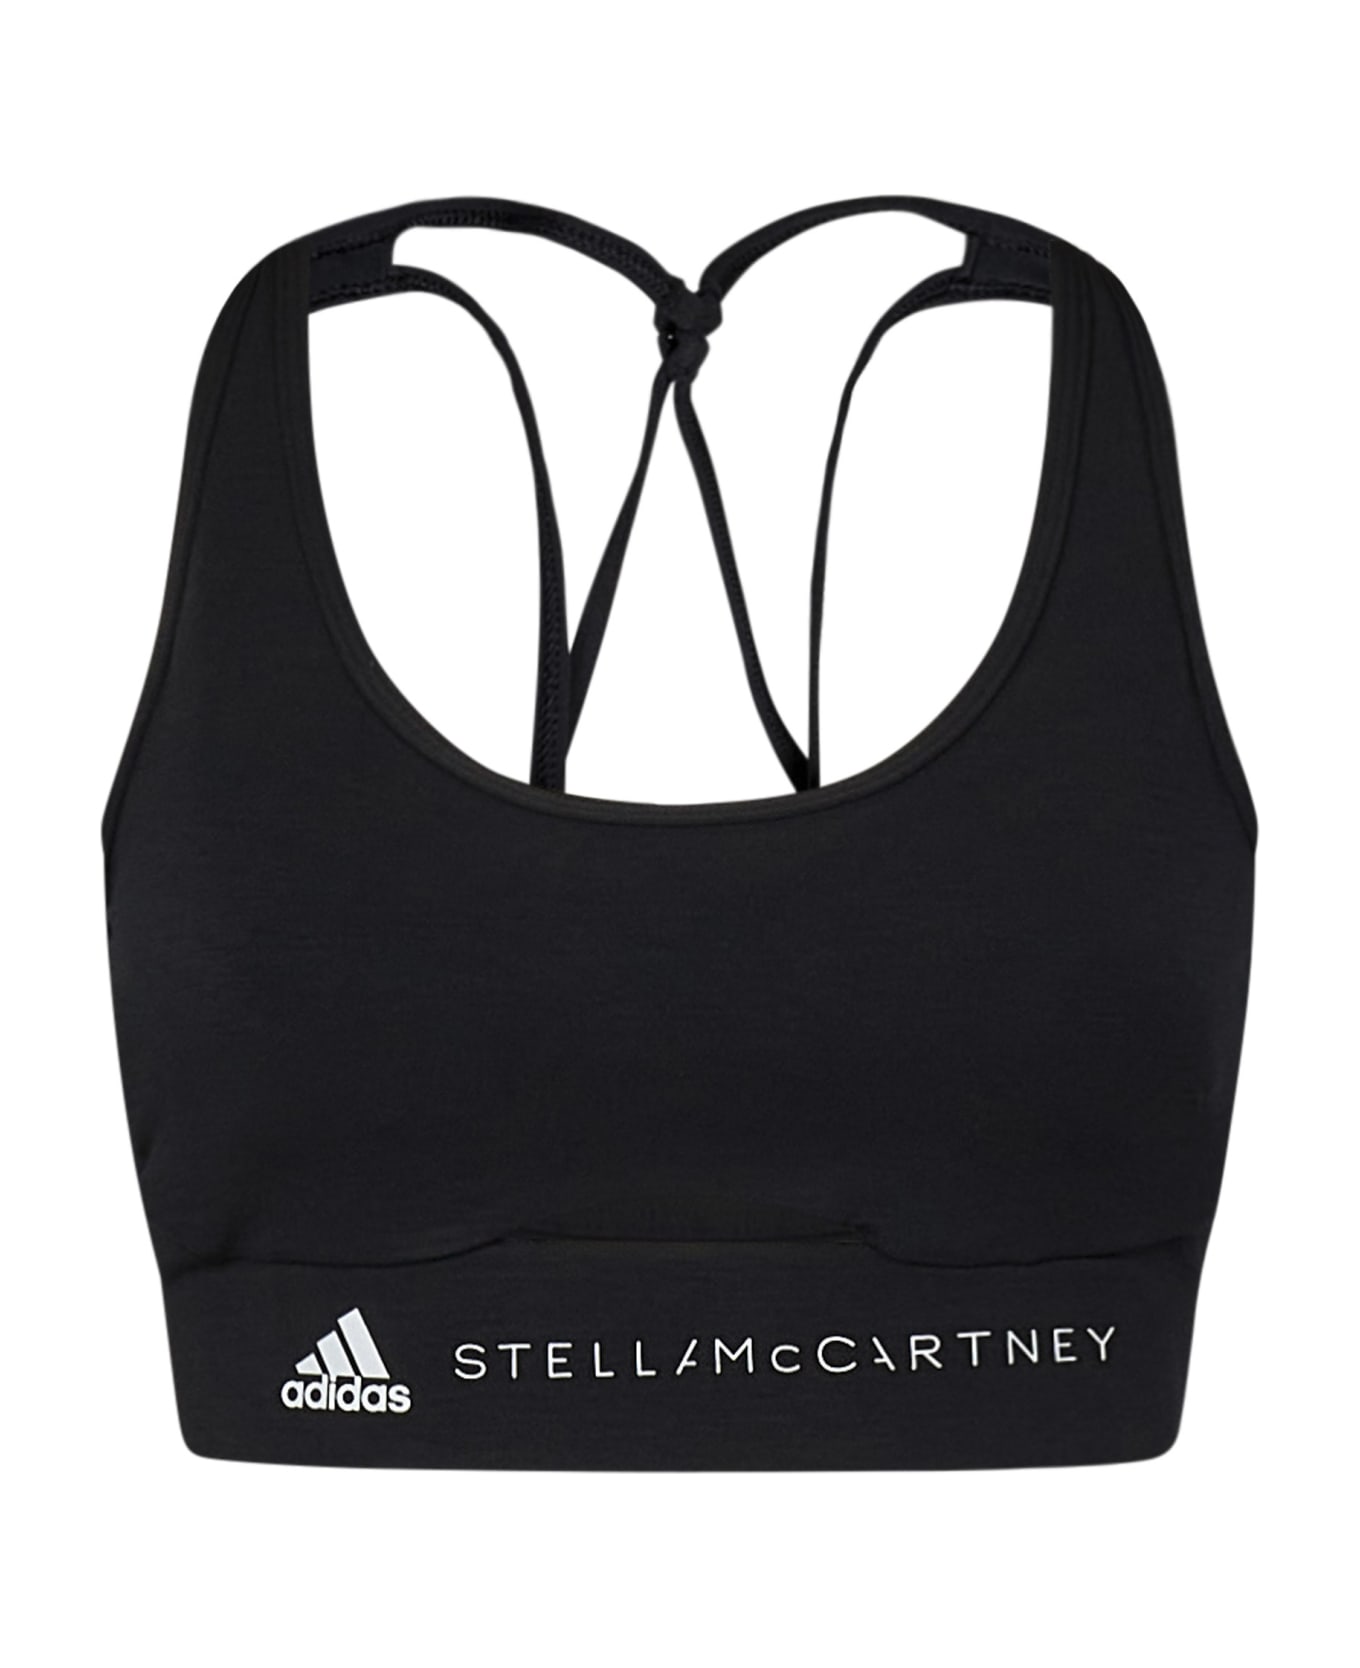 Adidas by Stella McCartney Top - Black